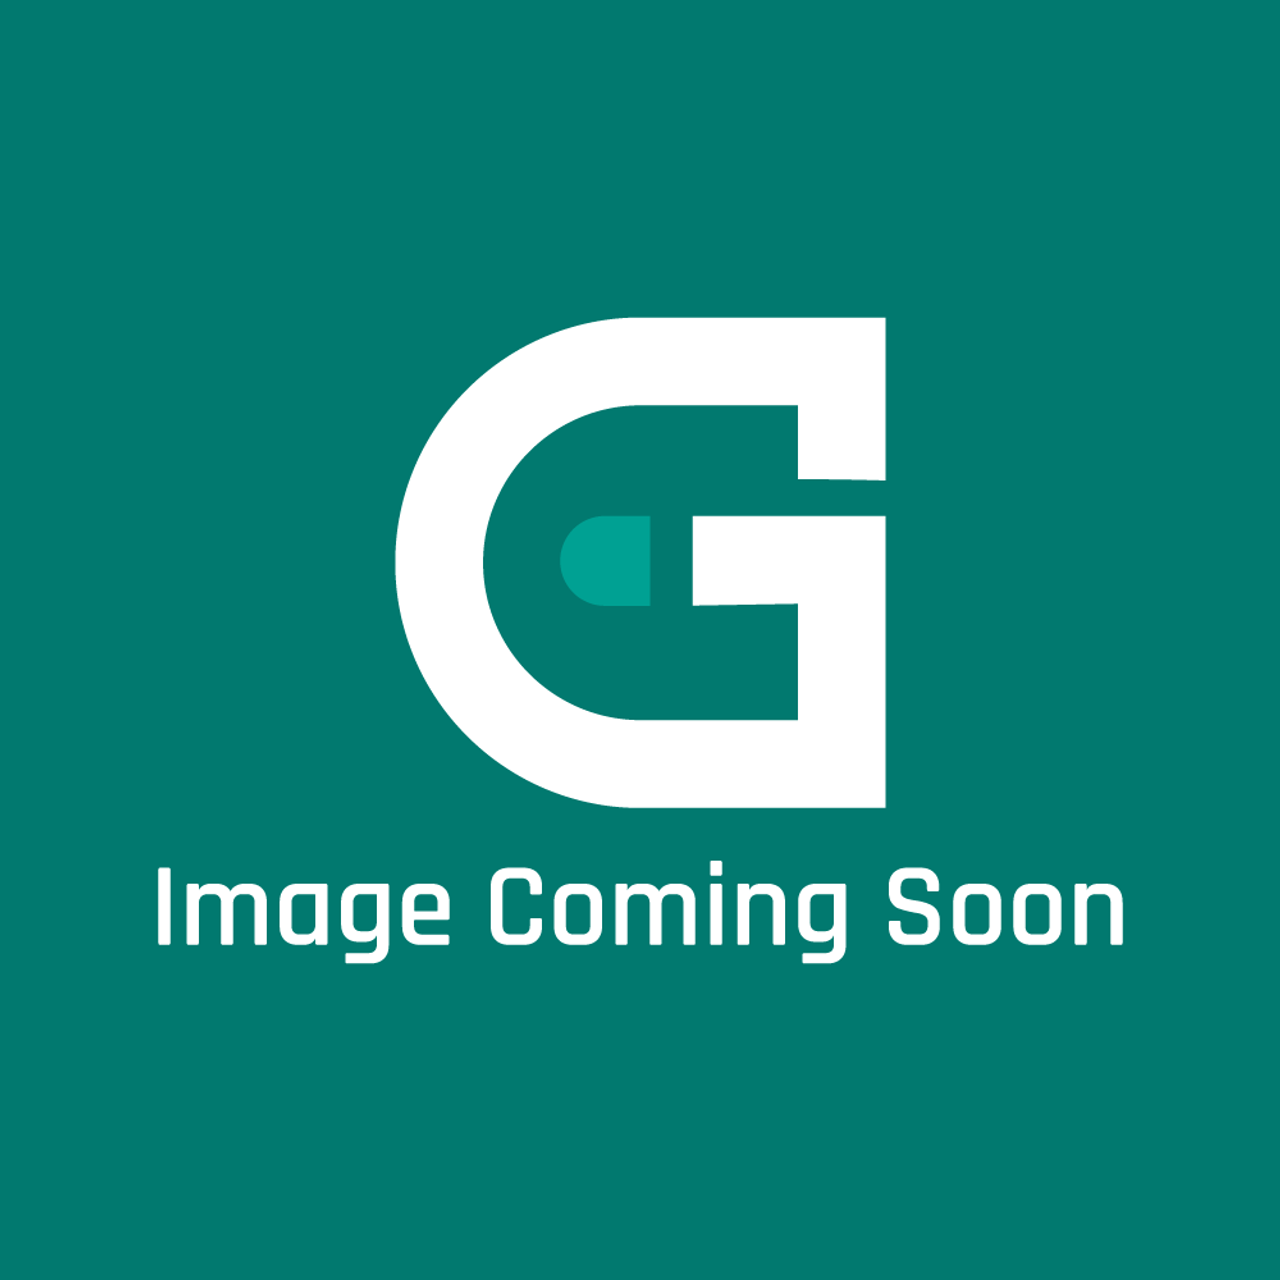 Garland G02452-1-8 - Grease Pan - Image Coming Soon!